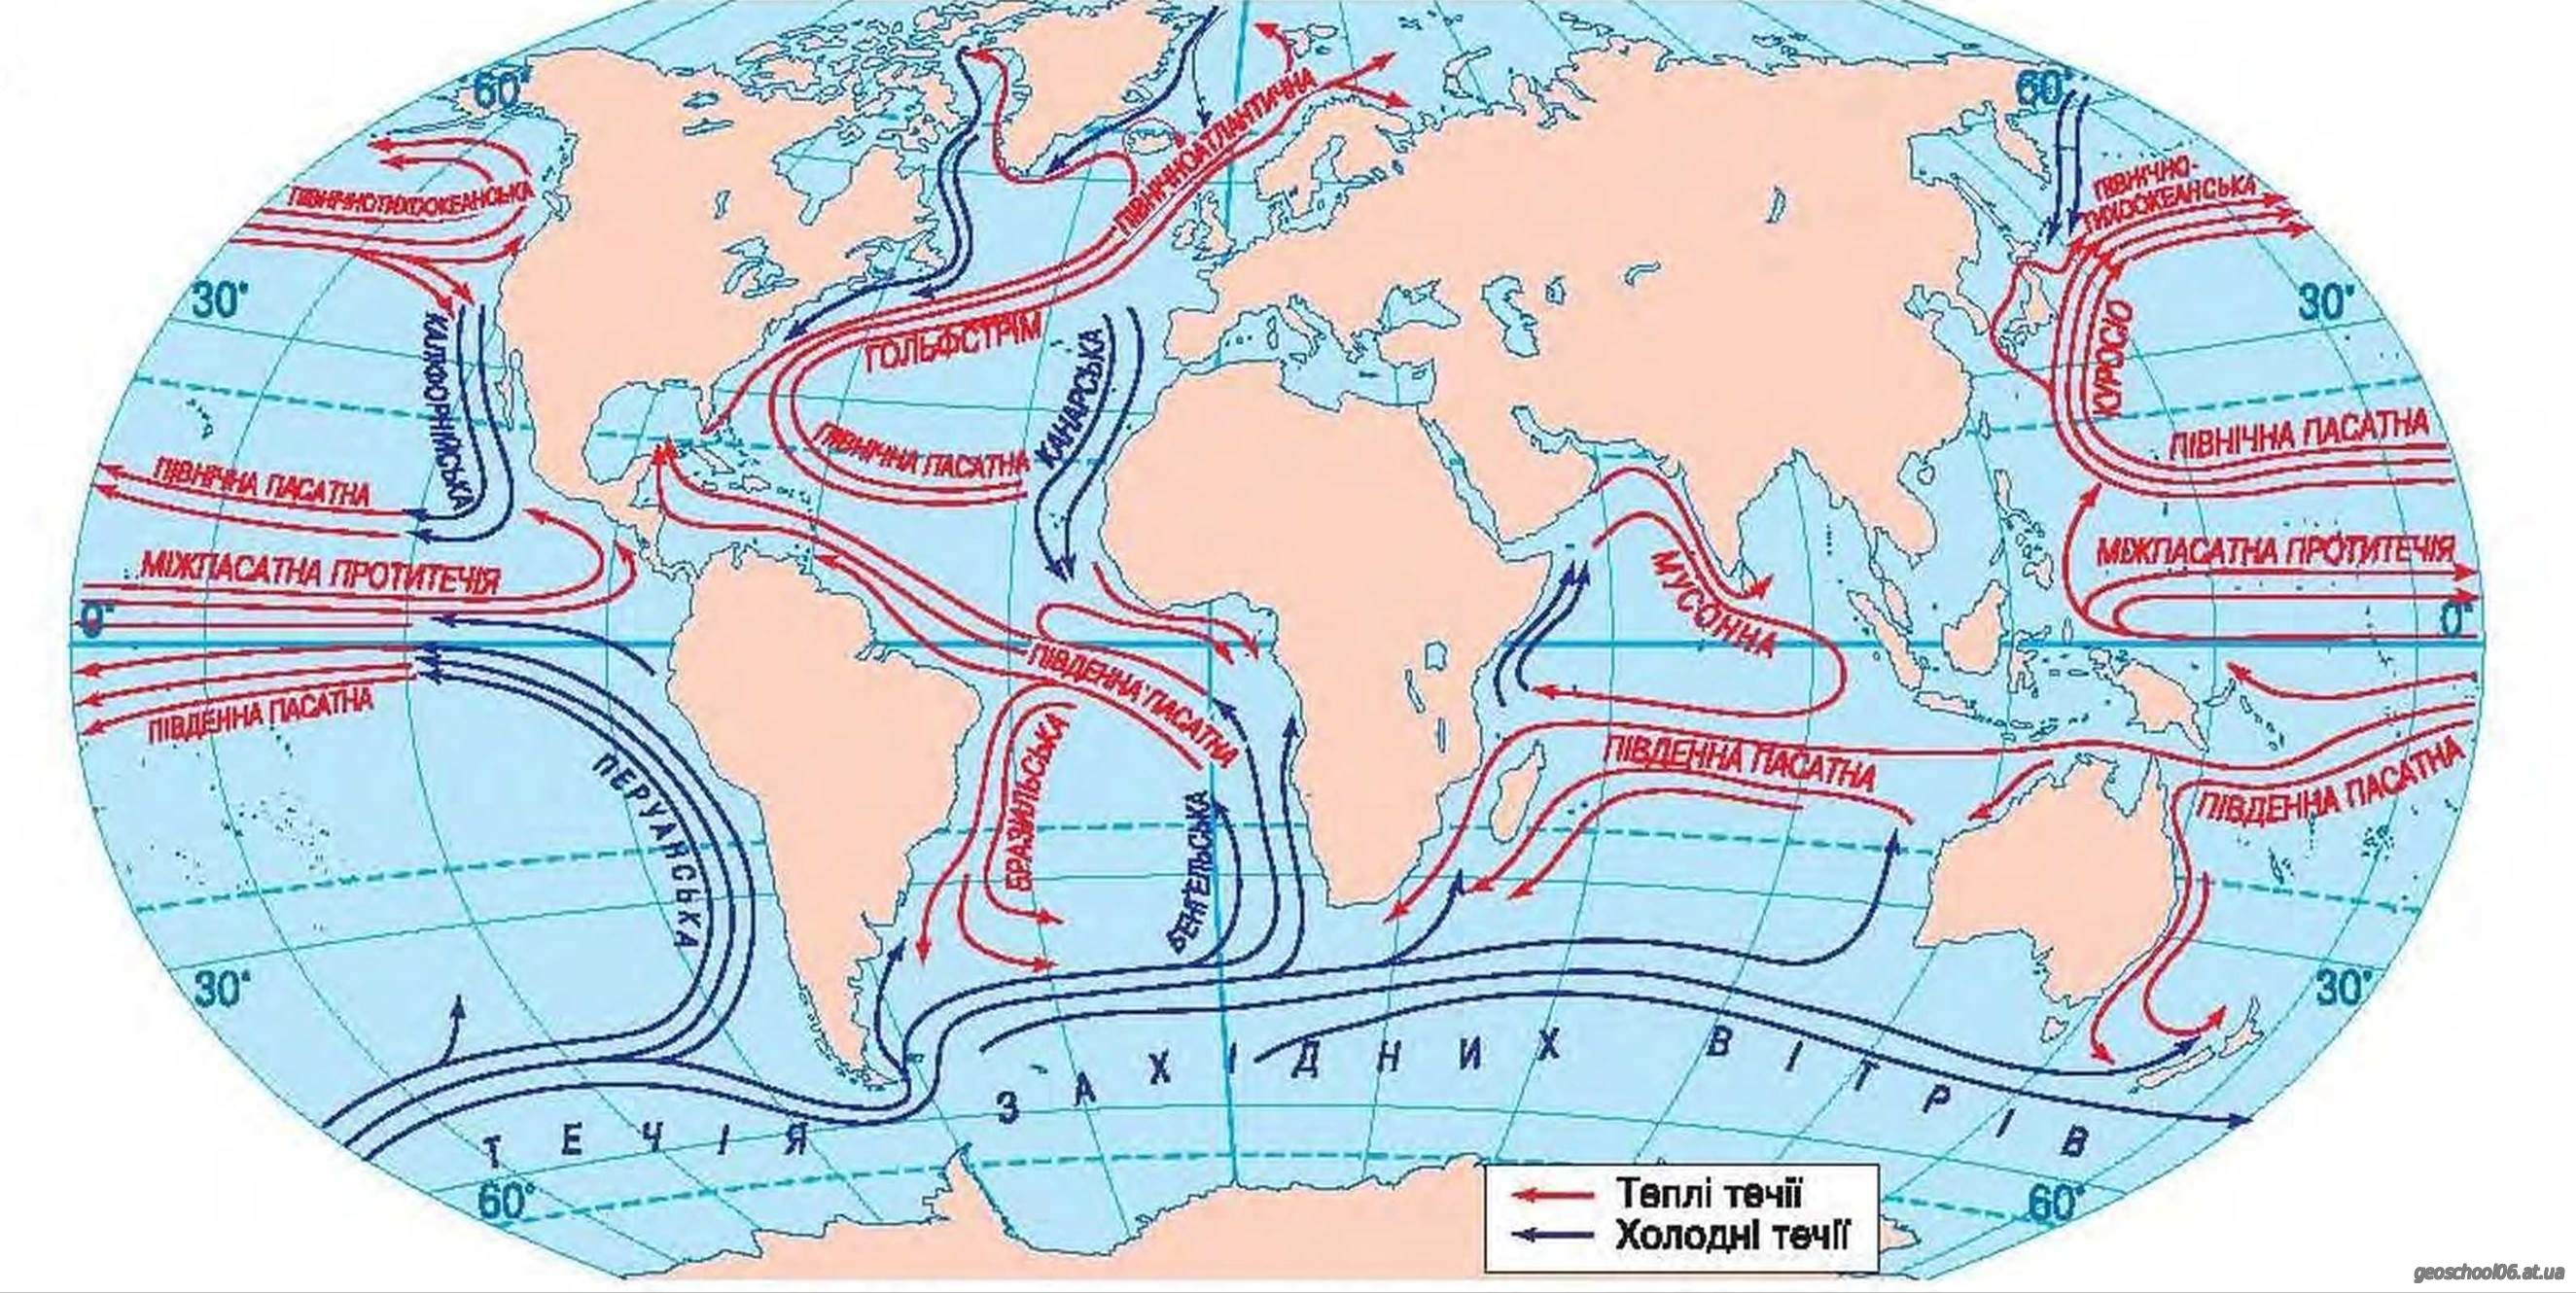 Течения тихого океана и индийского океана. Тёплые и холодные течения на карте мирового океана. Тёплые течения мирового океана на карте.